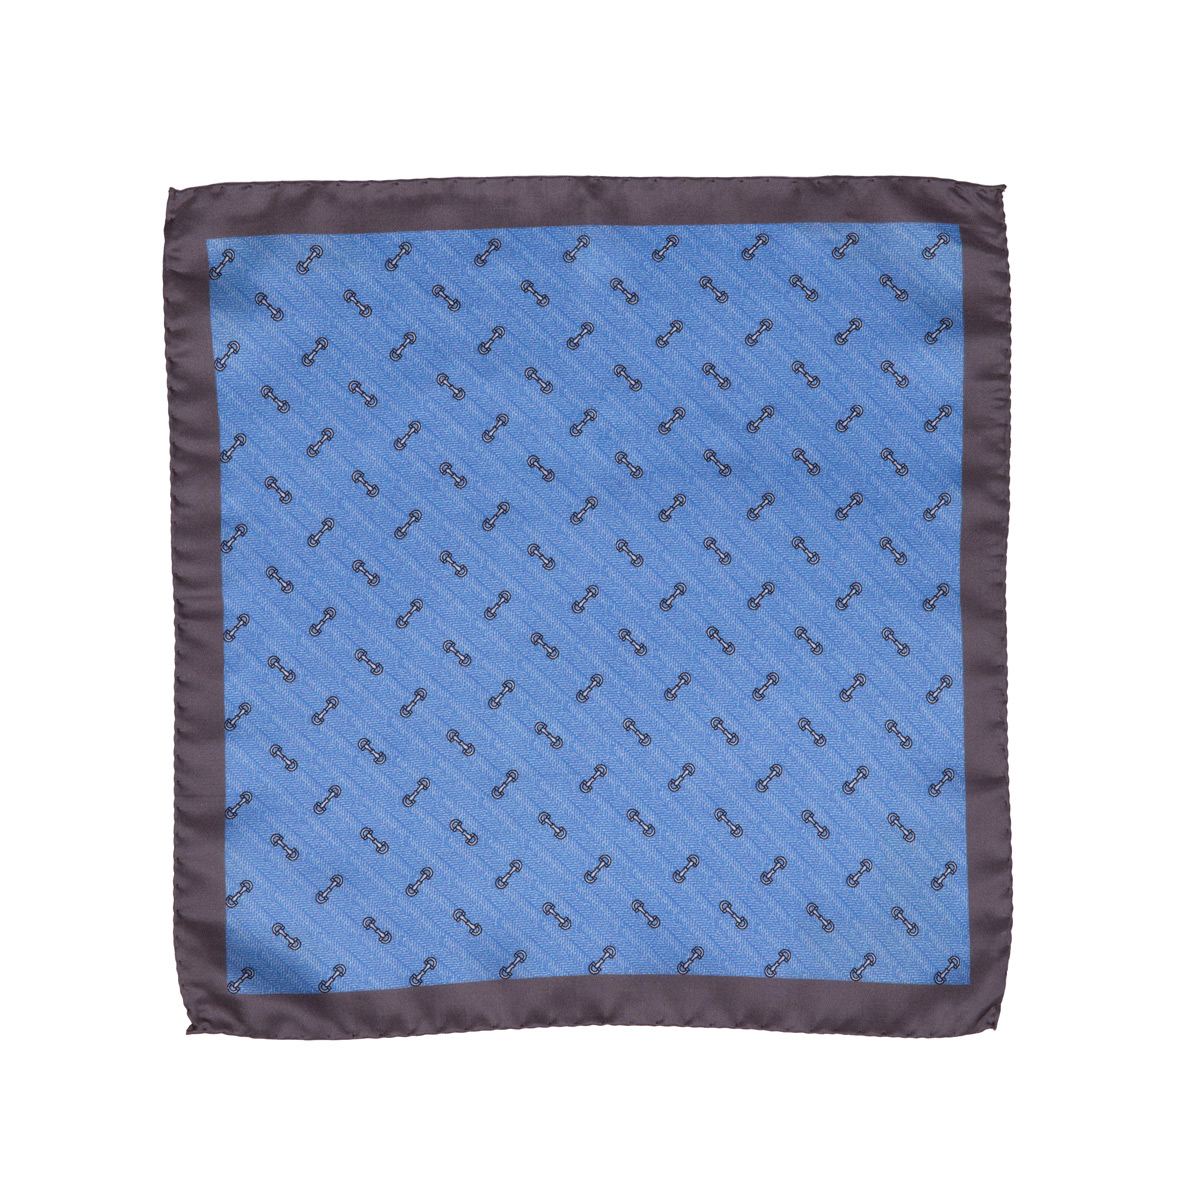 Stoff vom Einstecktuch aus Seidentwill mit Trensen-Motiv in blau